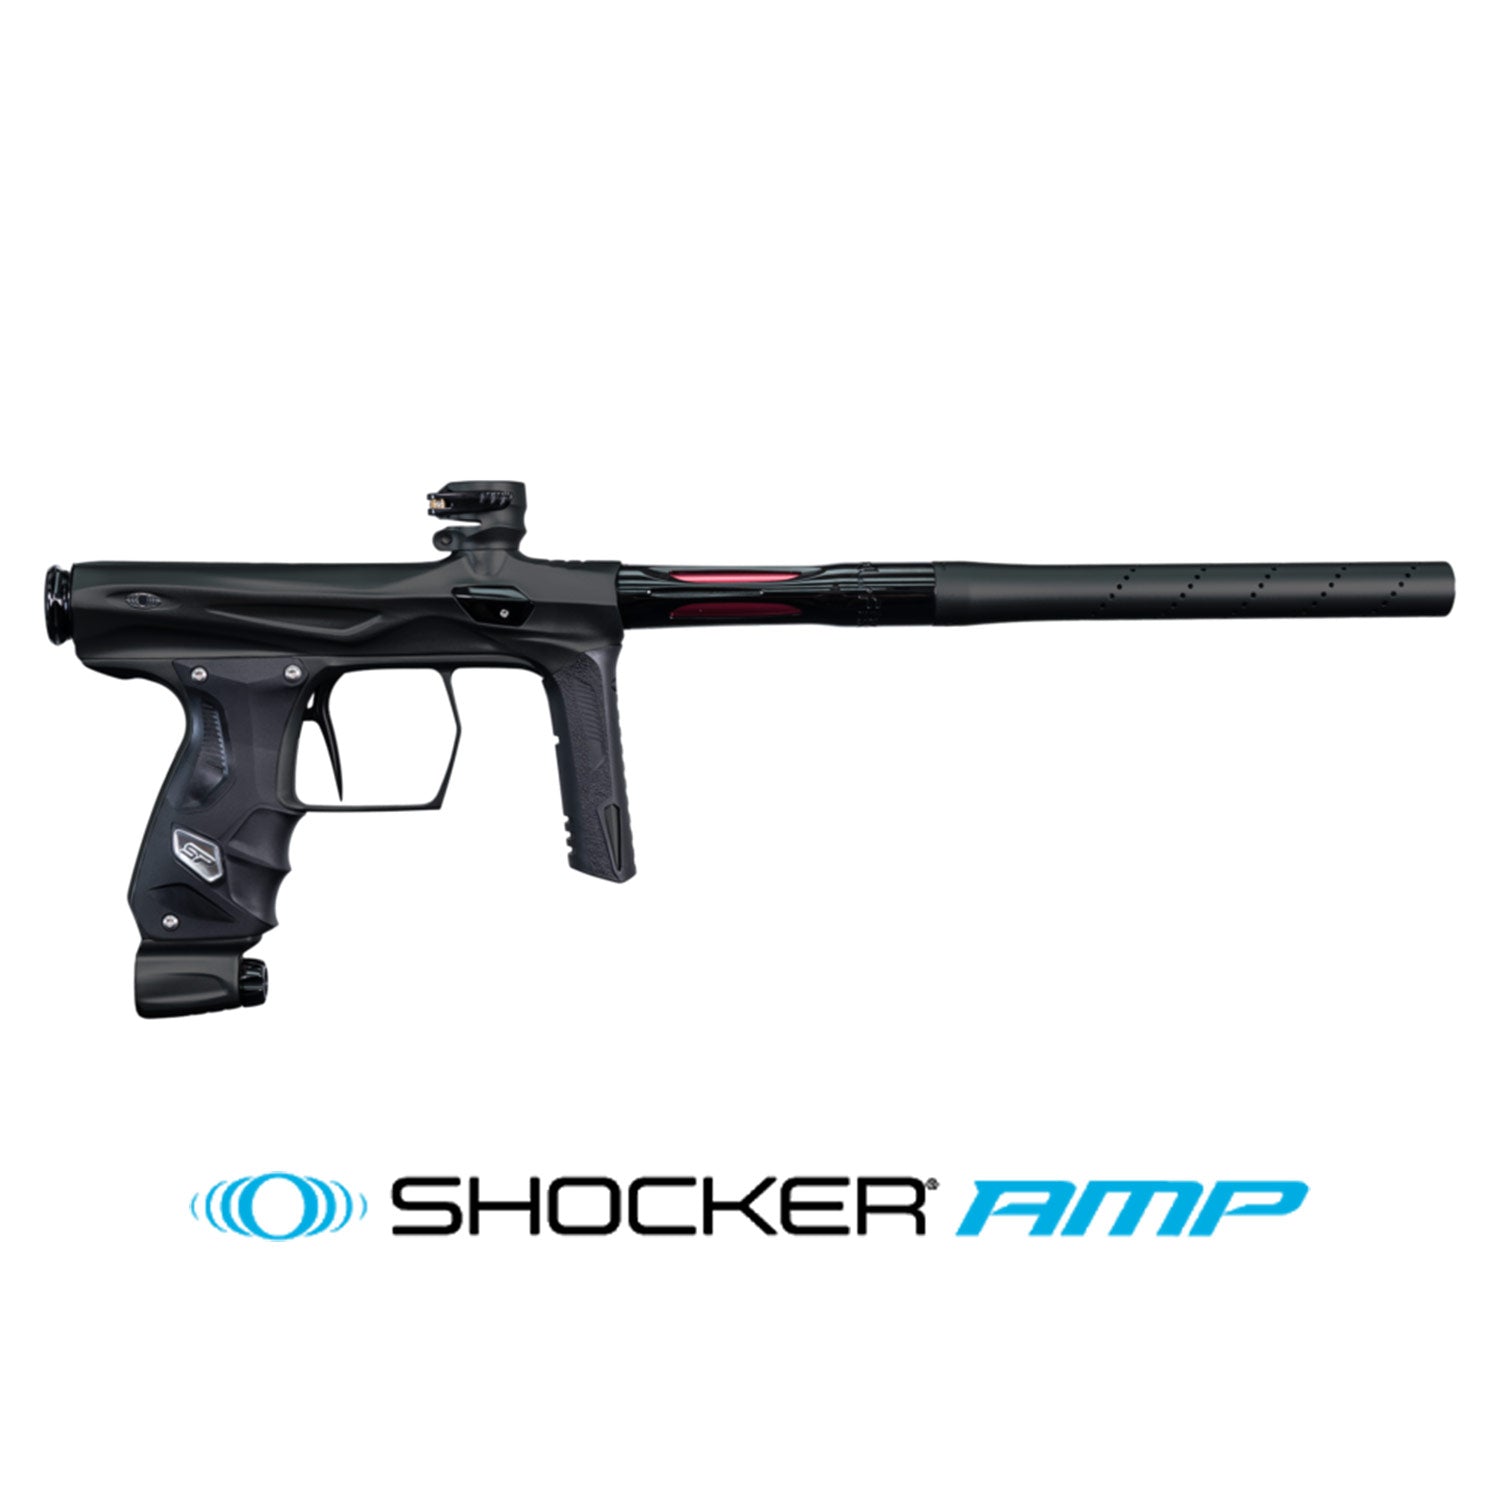 SP Shocker AMP - Black